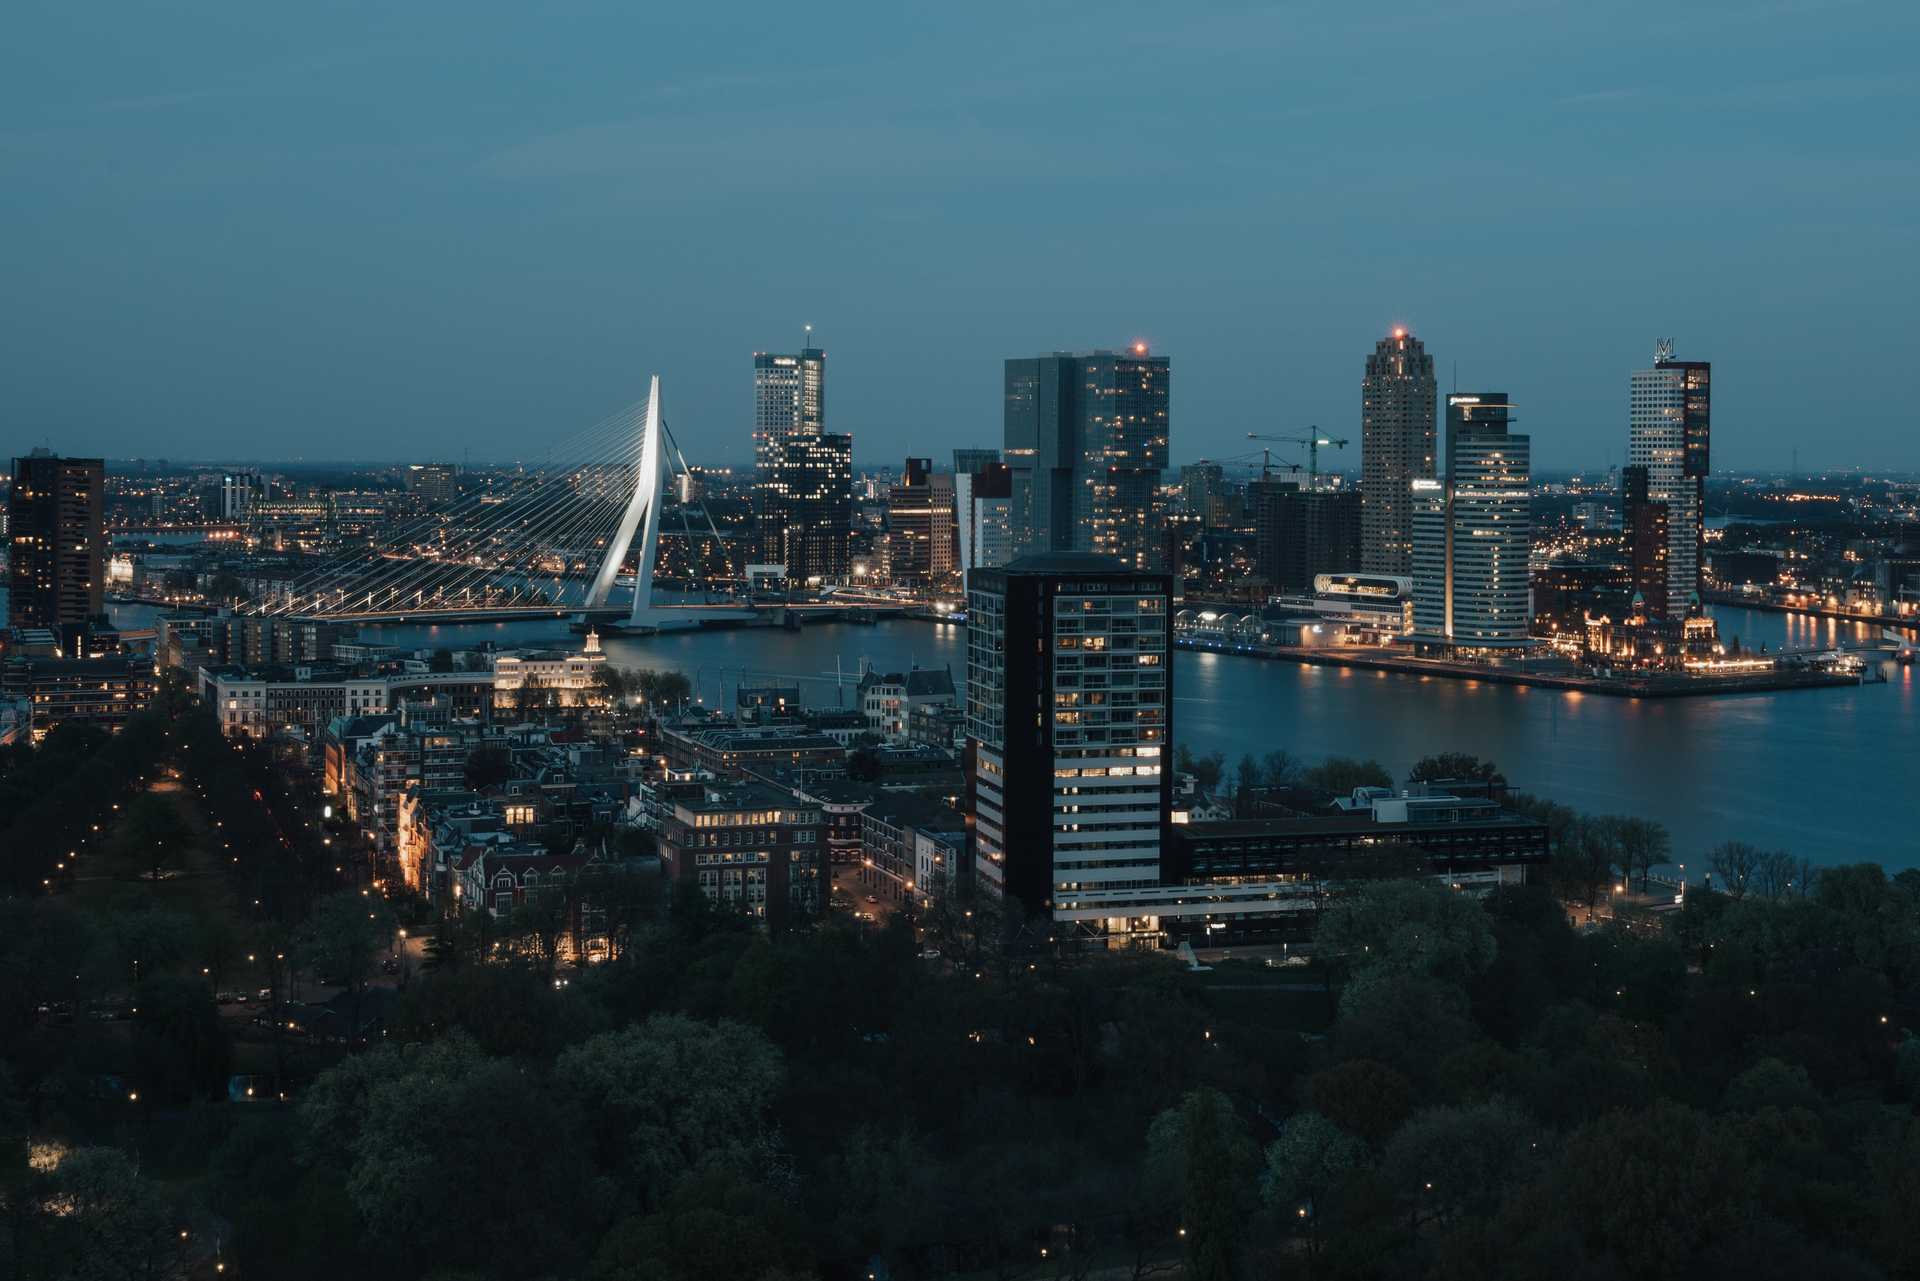 Ons hoofdkantoor is gevestigd aan de Westblaak in Rotterdam